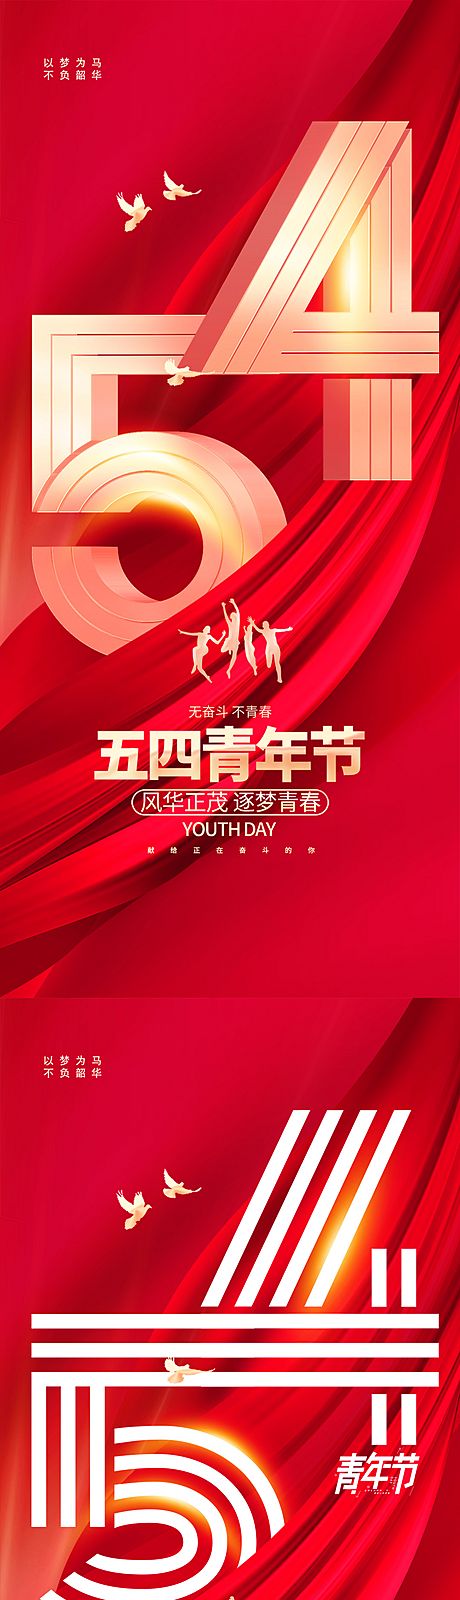 仙图网-地产54青年节海报